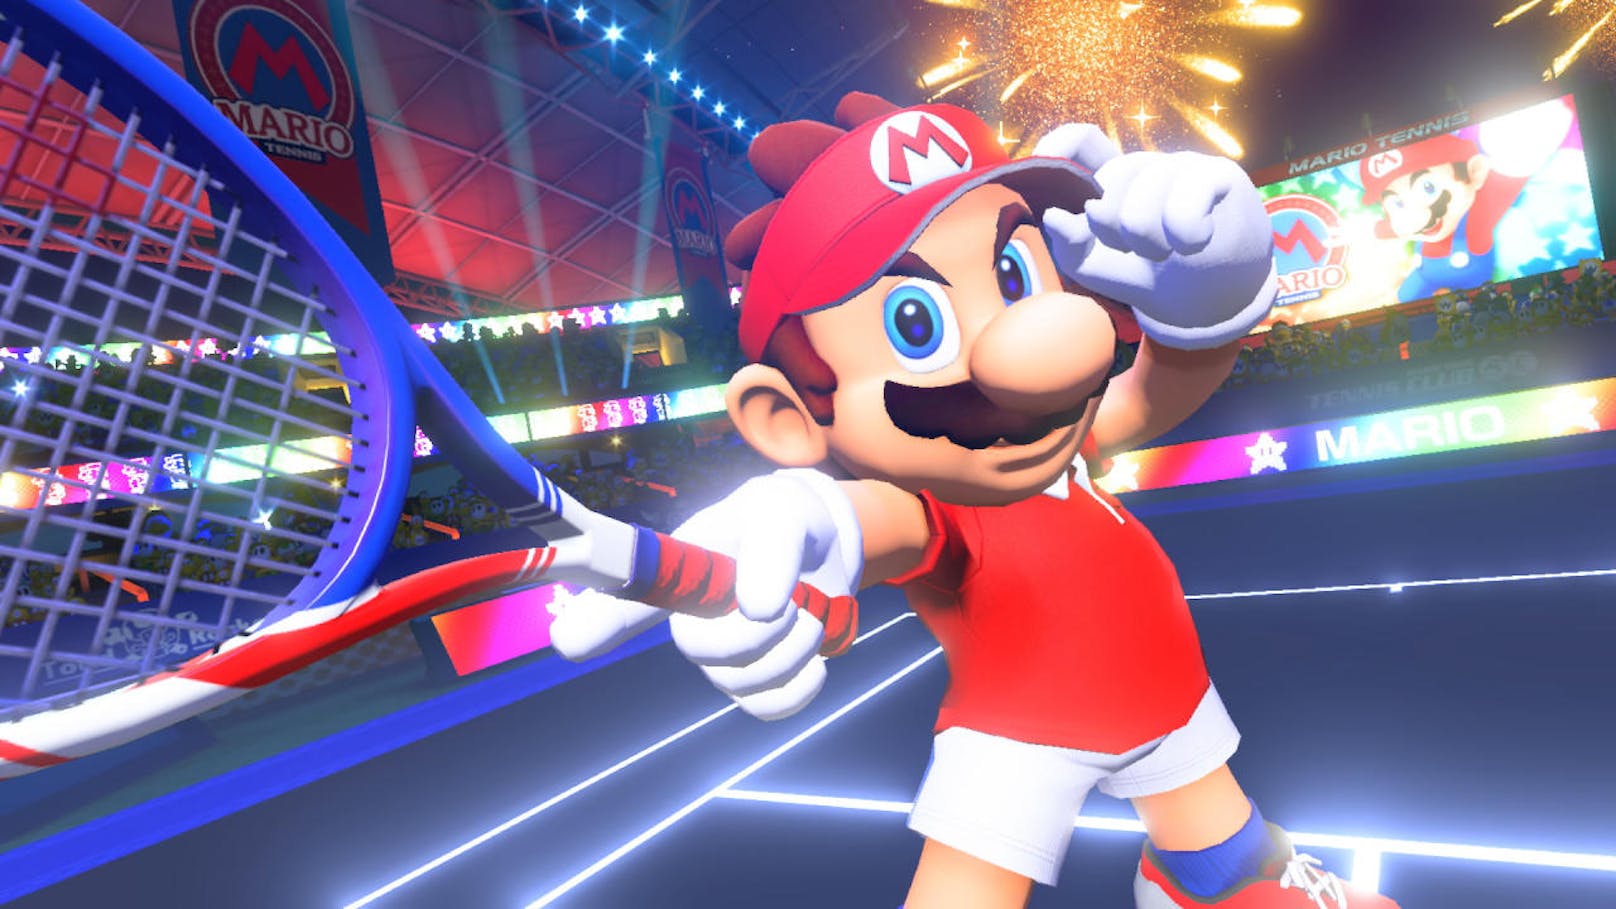 Nintendo Switch-Fans können Mario Tennis Aces mehr als zwei Tage lang kostenlos testen. Am 1. Juniwochenende - von Freitagnachmittag bis Sonntagnacht - steht die Demo-Version im Turnier- und im Einzeltrainingsmodus bereit. Gratis mitmachen können alle Nintendo Switch-Spieler mit Internetanschluss. Das Spiel erscheint am 22. Juni.